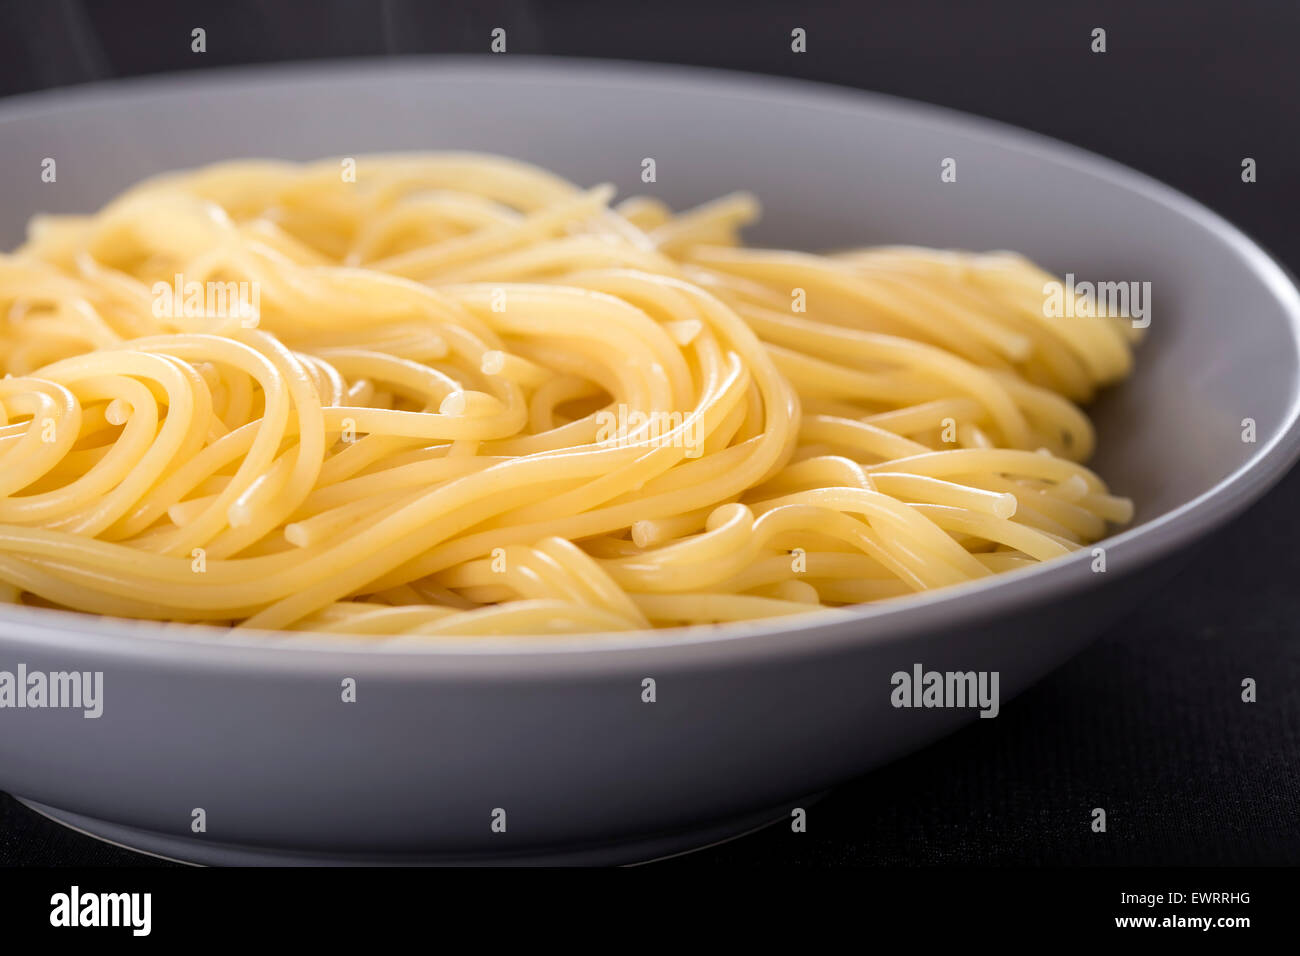 Bollite gli spaghetti italiani nella piastra su sfondo nero Foto Stock